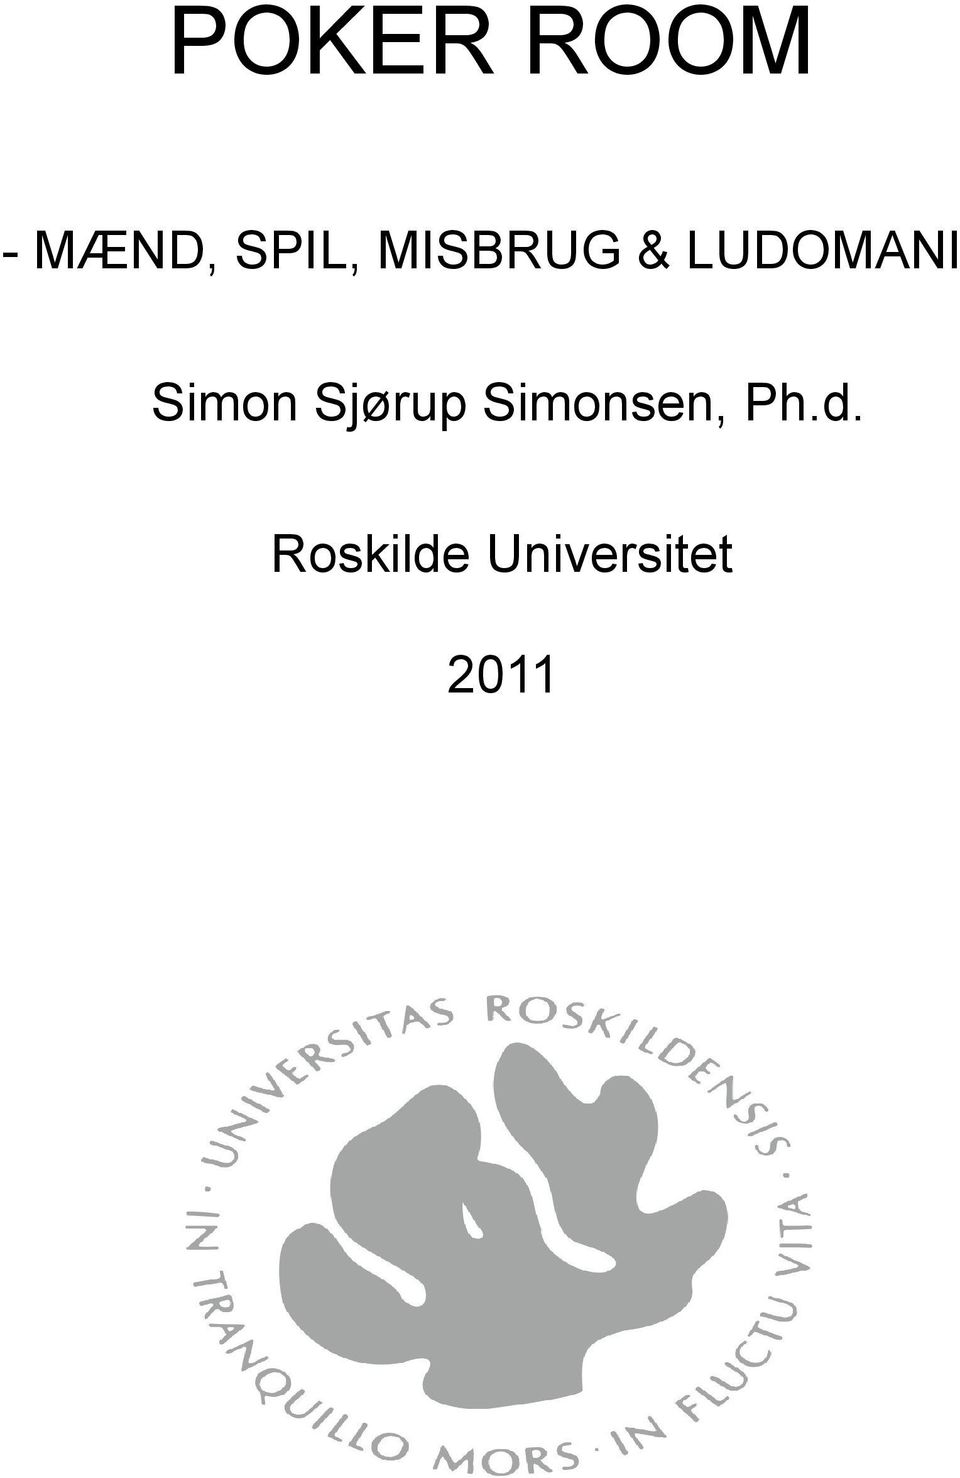 Sjørup Simonsen, Ph.d.